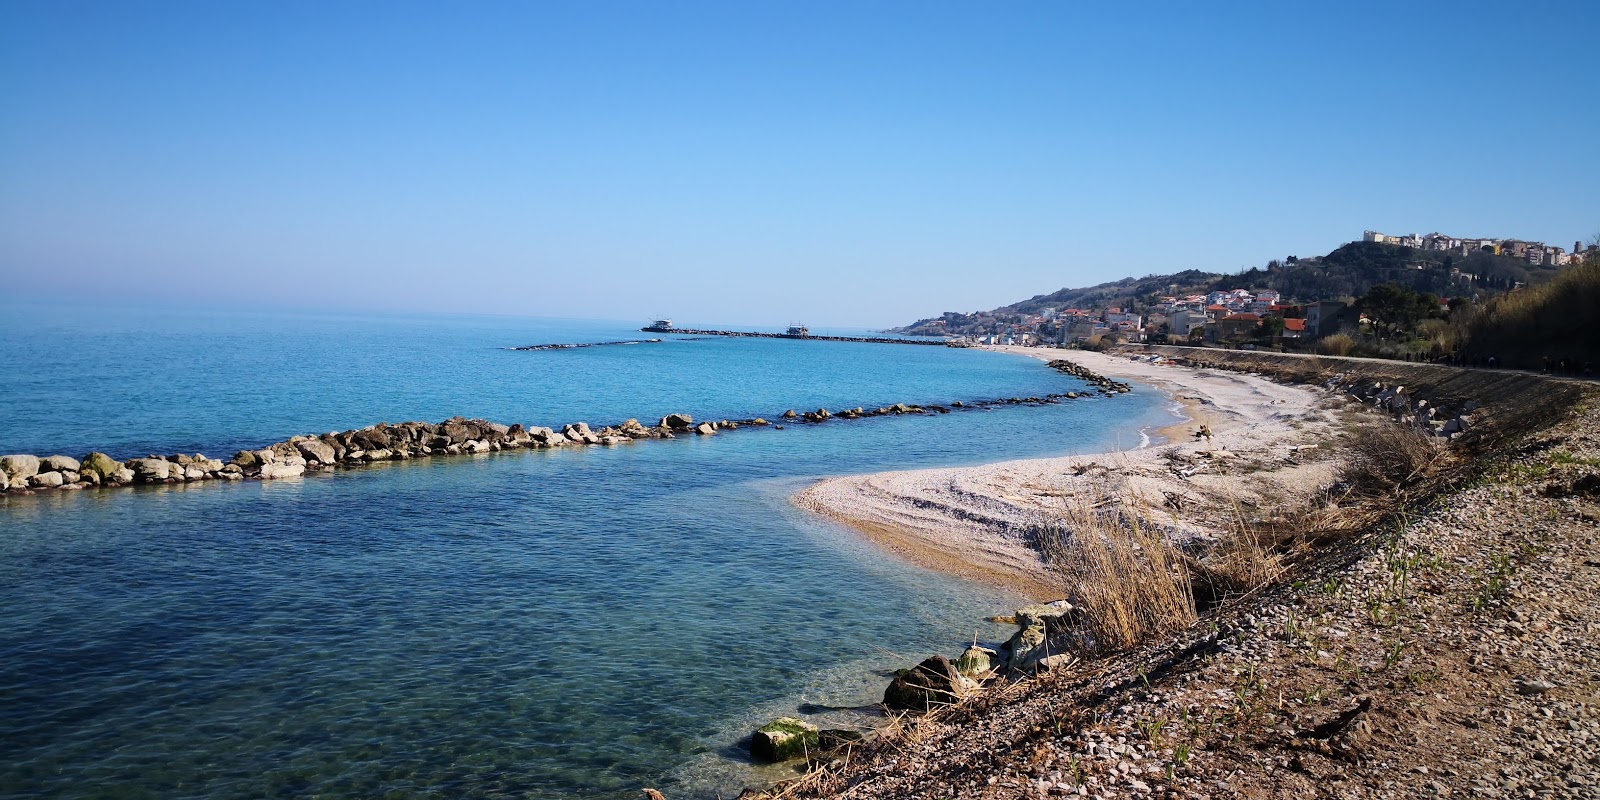 Photo of Spiaggia di Punta Acquabella with straight shore